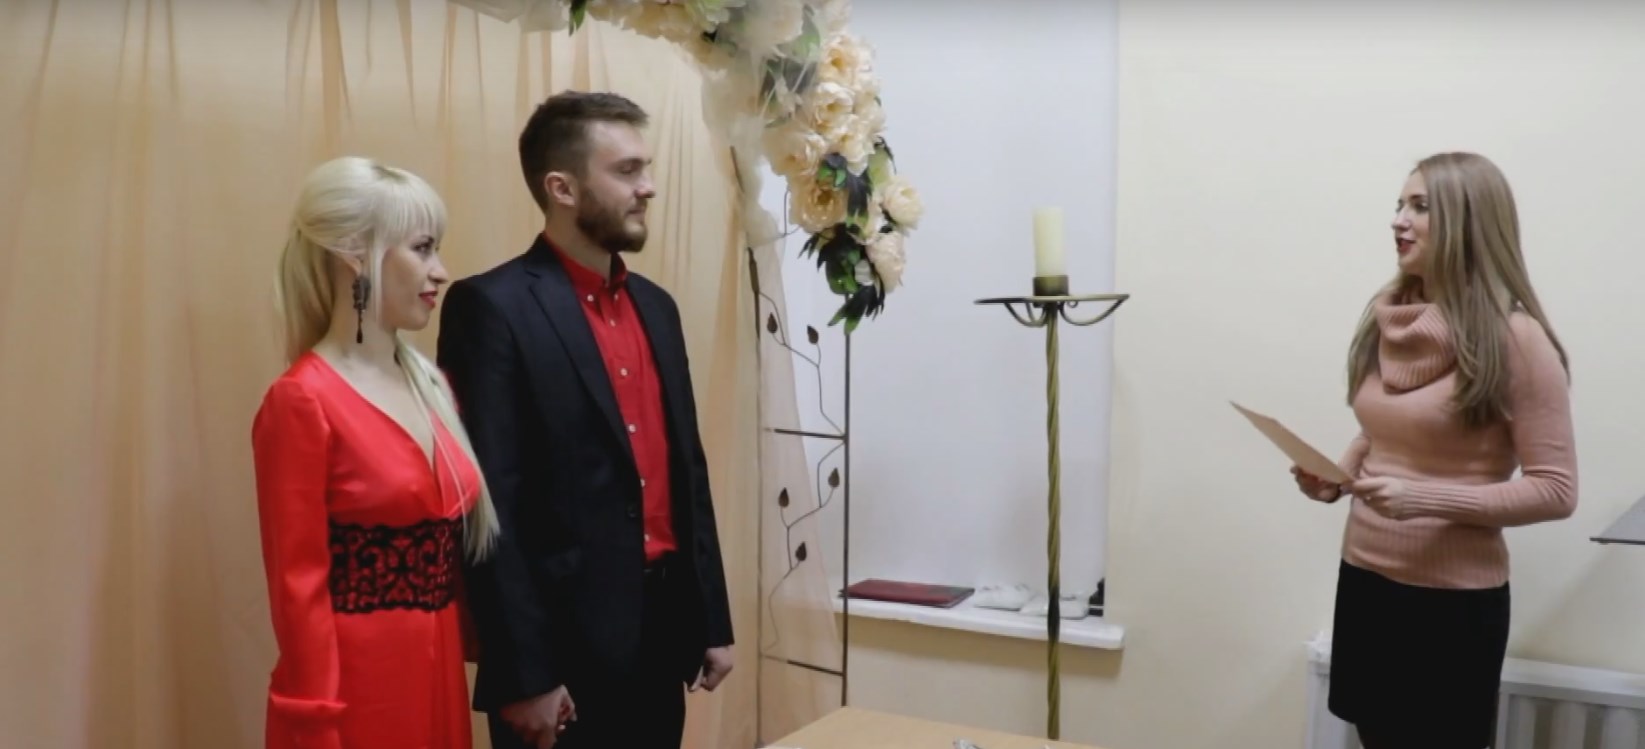 Брак за сутки – как это работает в Мариуполе?